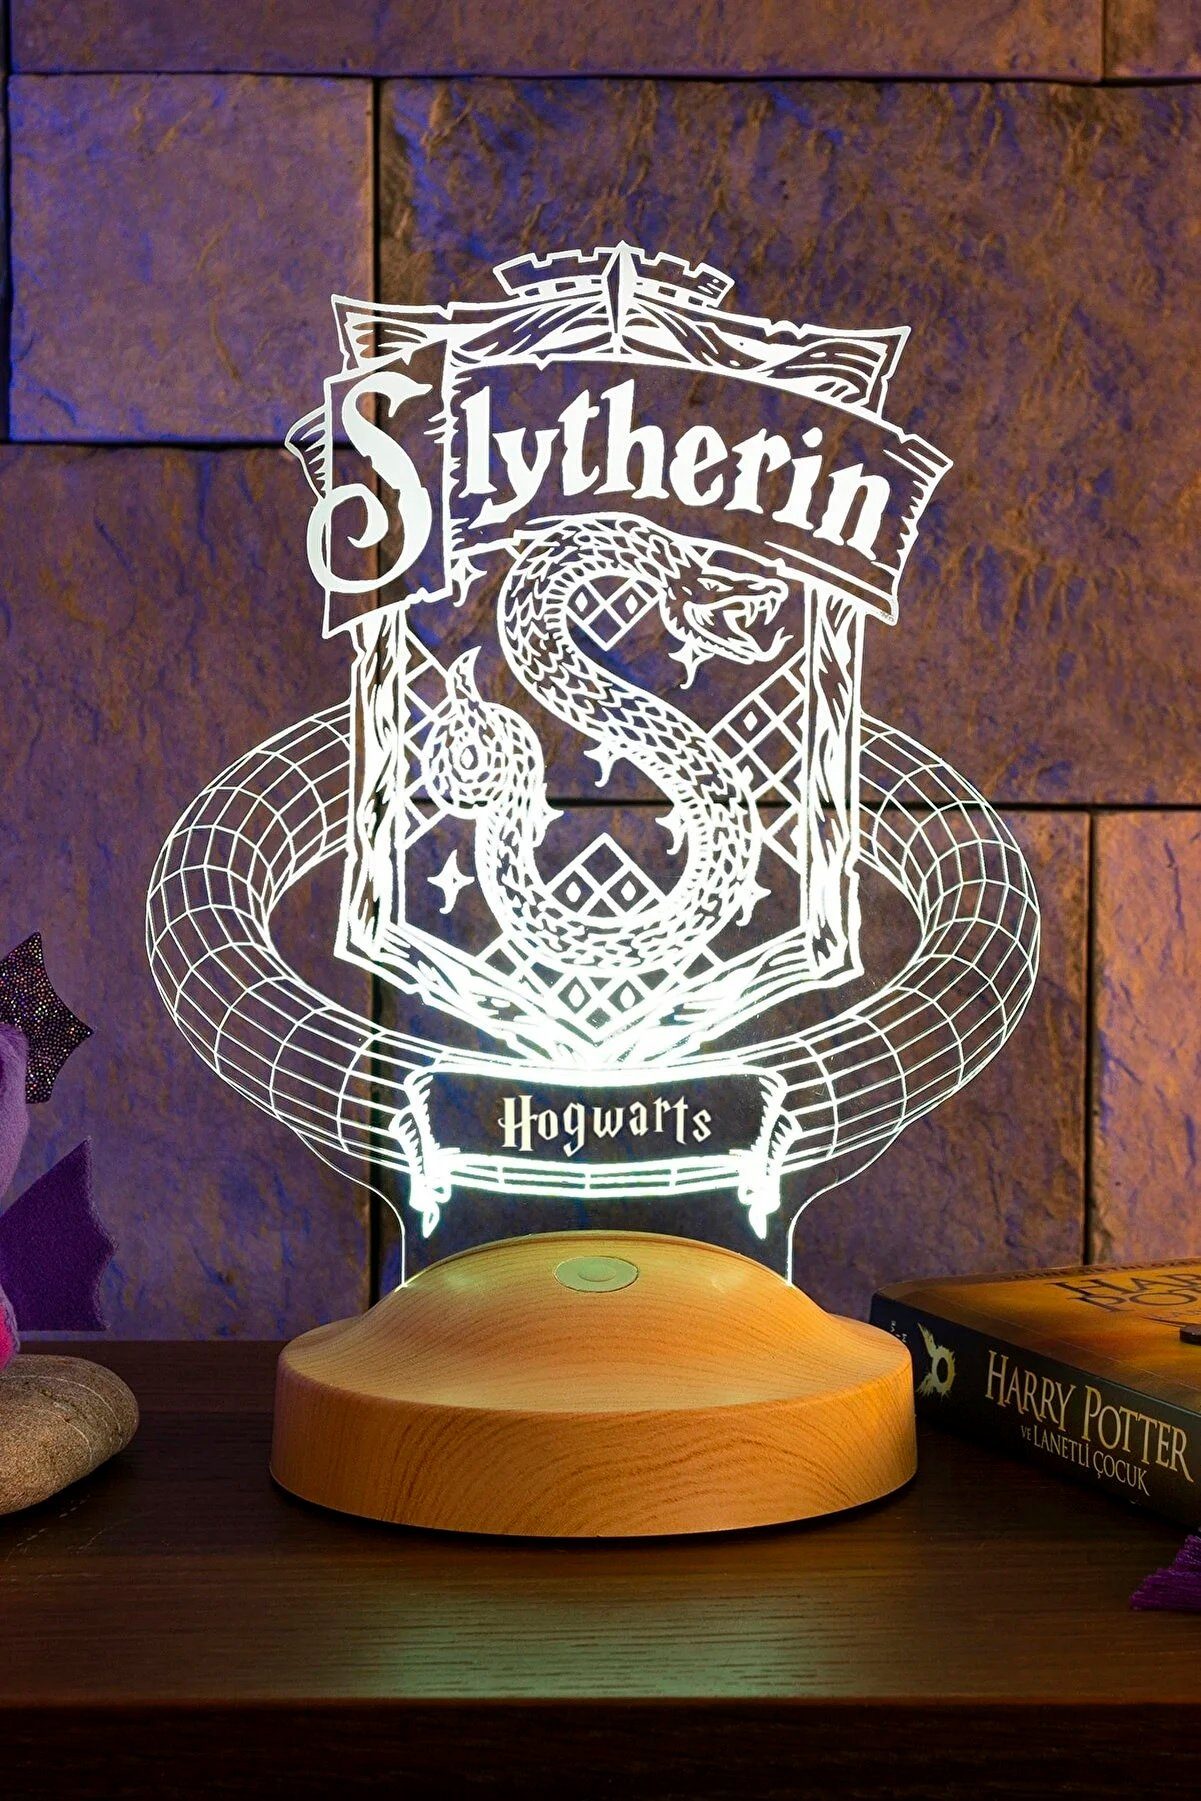 Geschenkelampe LED Nachttischlampe Slytherin Hogwarts Harry Potter 3D Nachtlicht Geschenke Potterheads, Leuchte 7 Farben fest integriert, Geburtstagsgeschenk für Freunde, Mädchen, Jungen, HP Fans